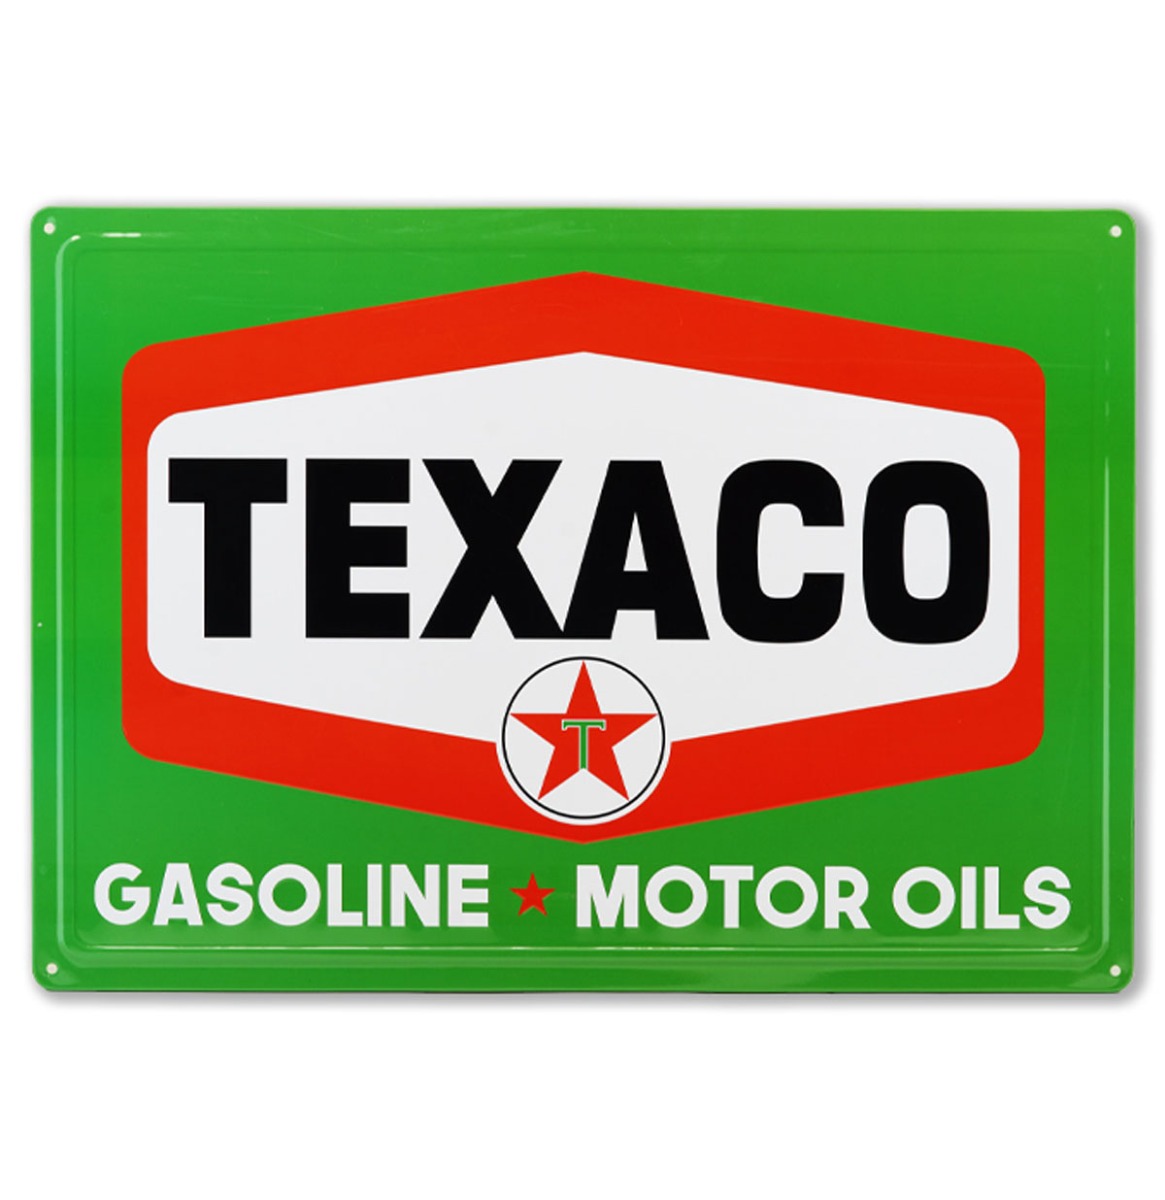 Texaco Gasoline Motor Oil Metalen Bord Met Reliëf 43 x 31 cm